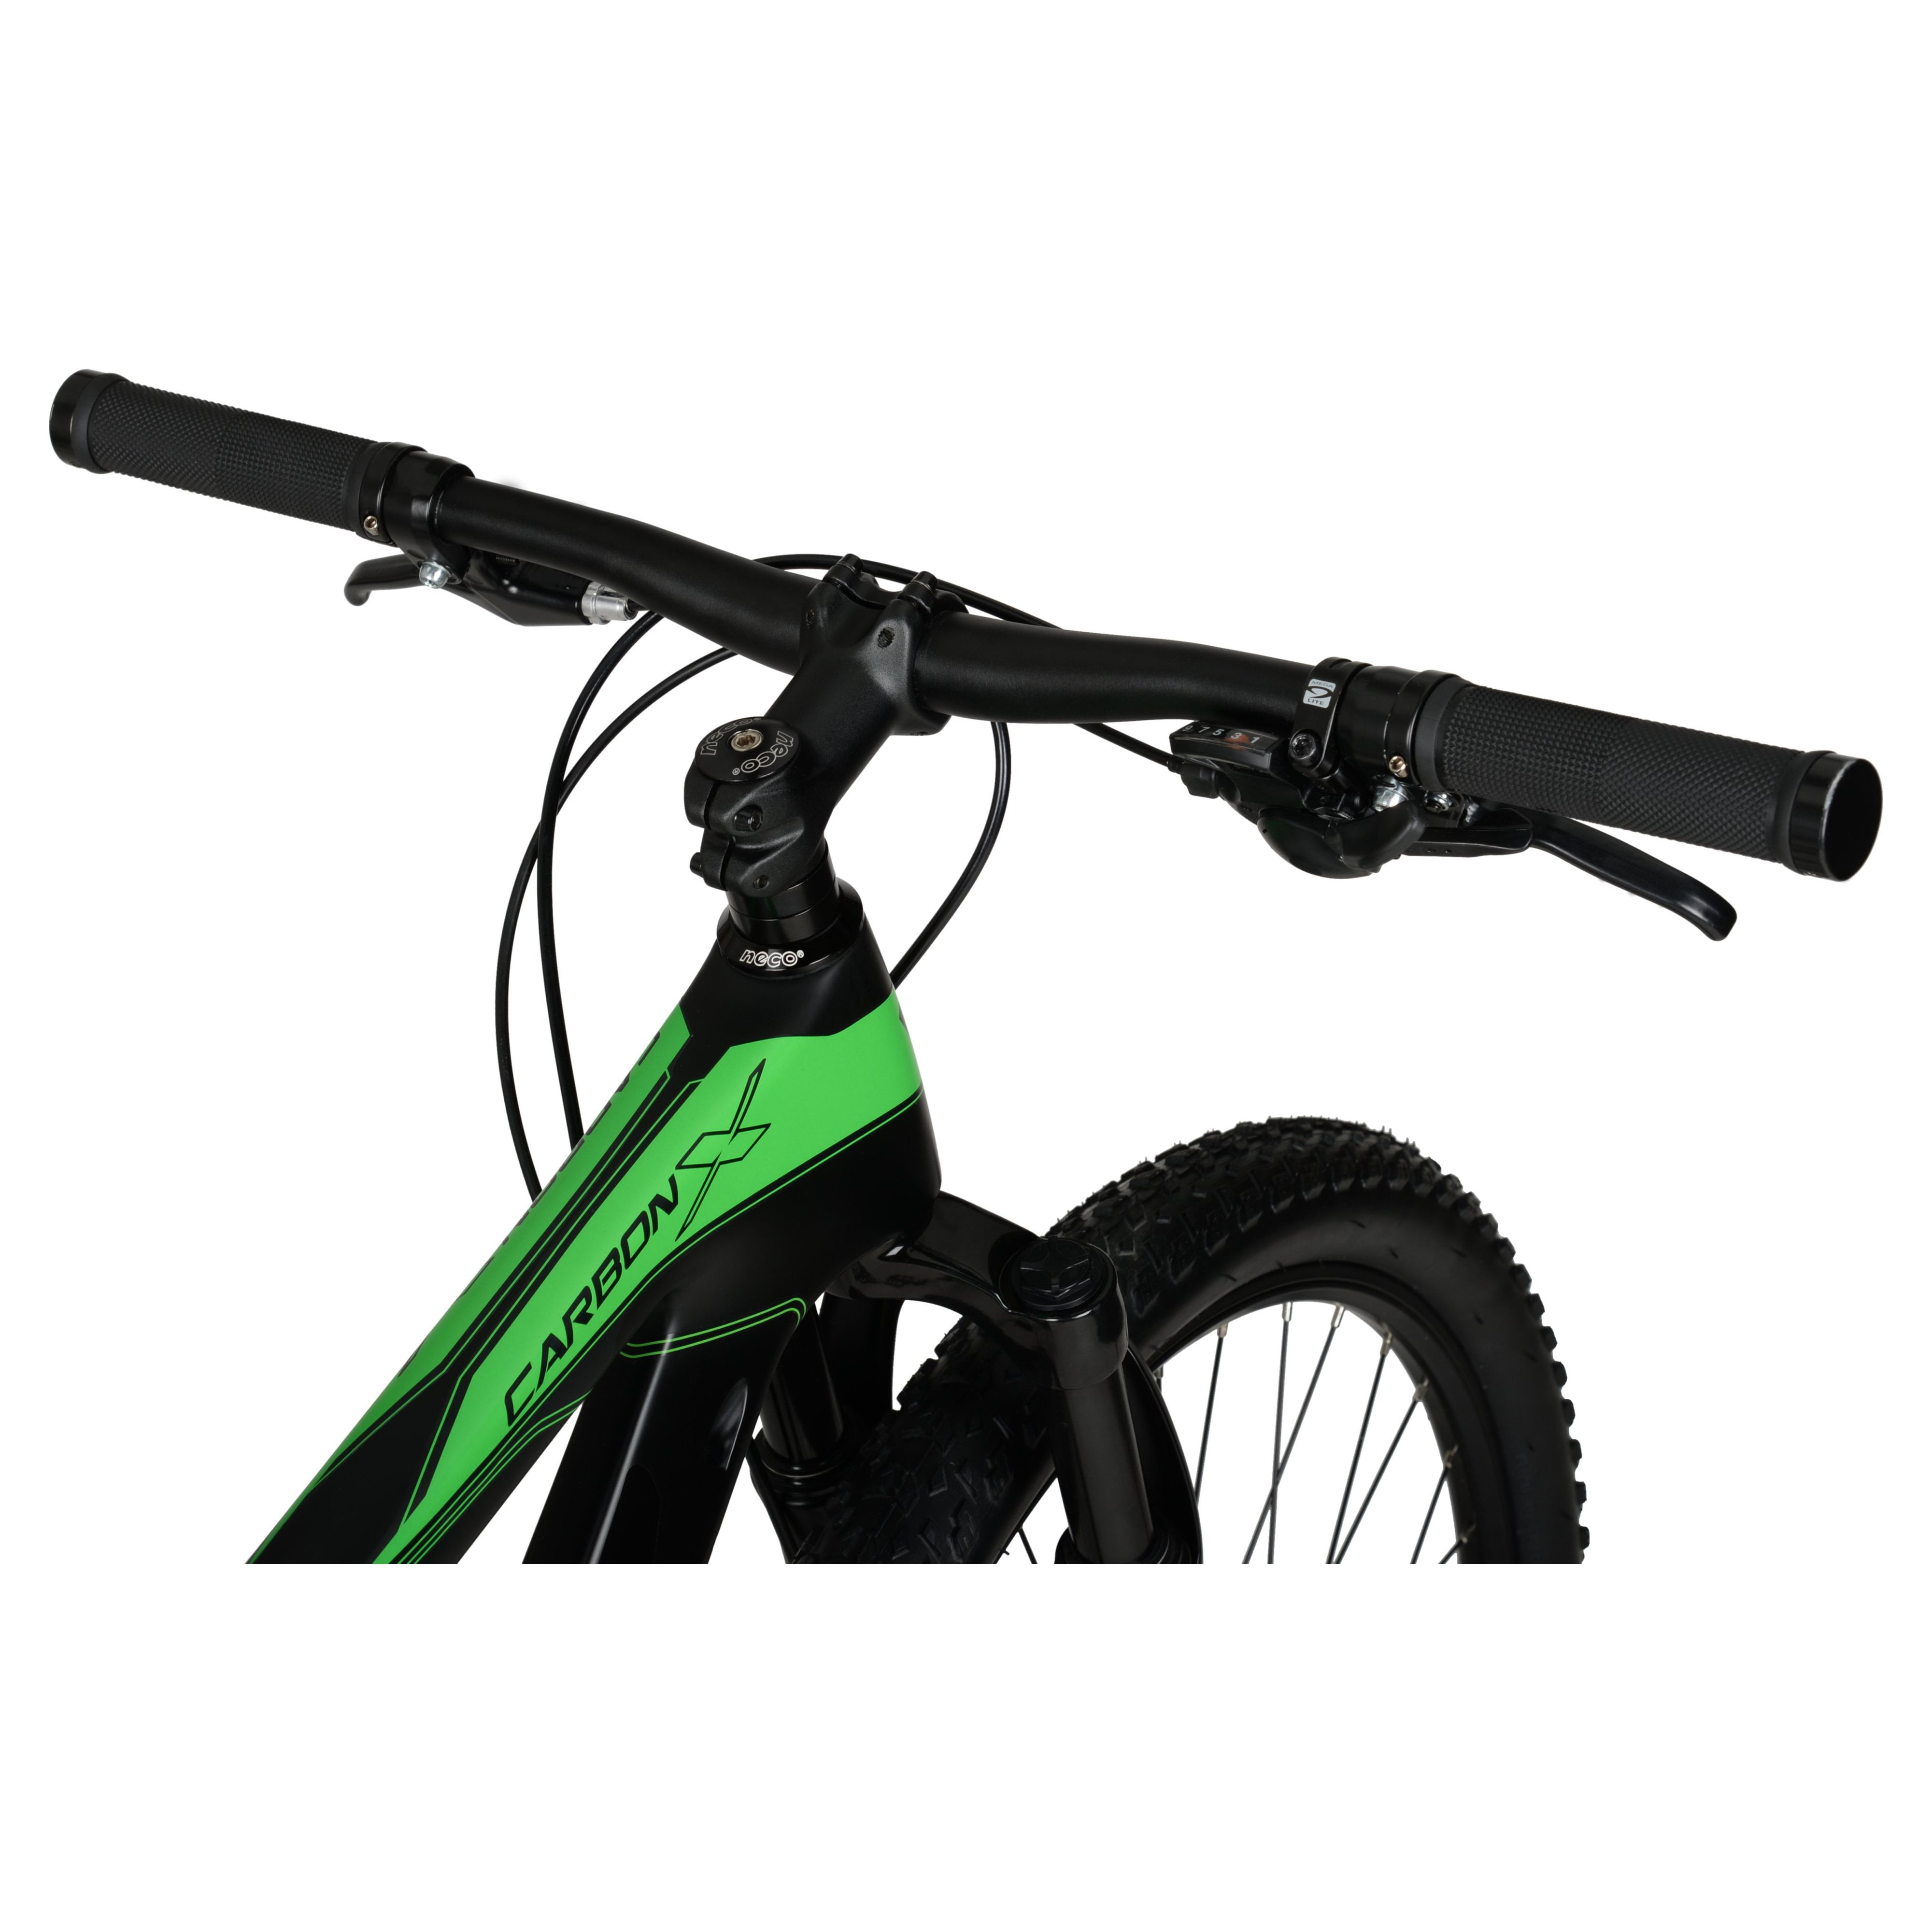 Hyper 29" Carbon Fiber Men's Mountain Bike, Black/Green - image 8 of 12